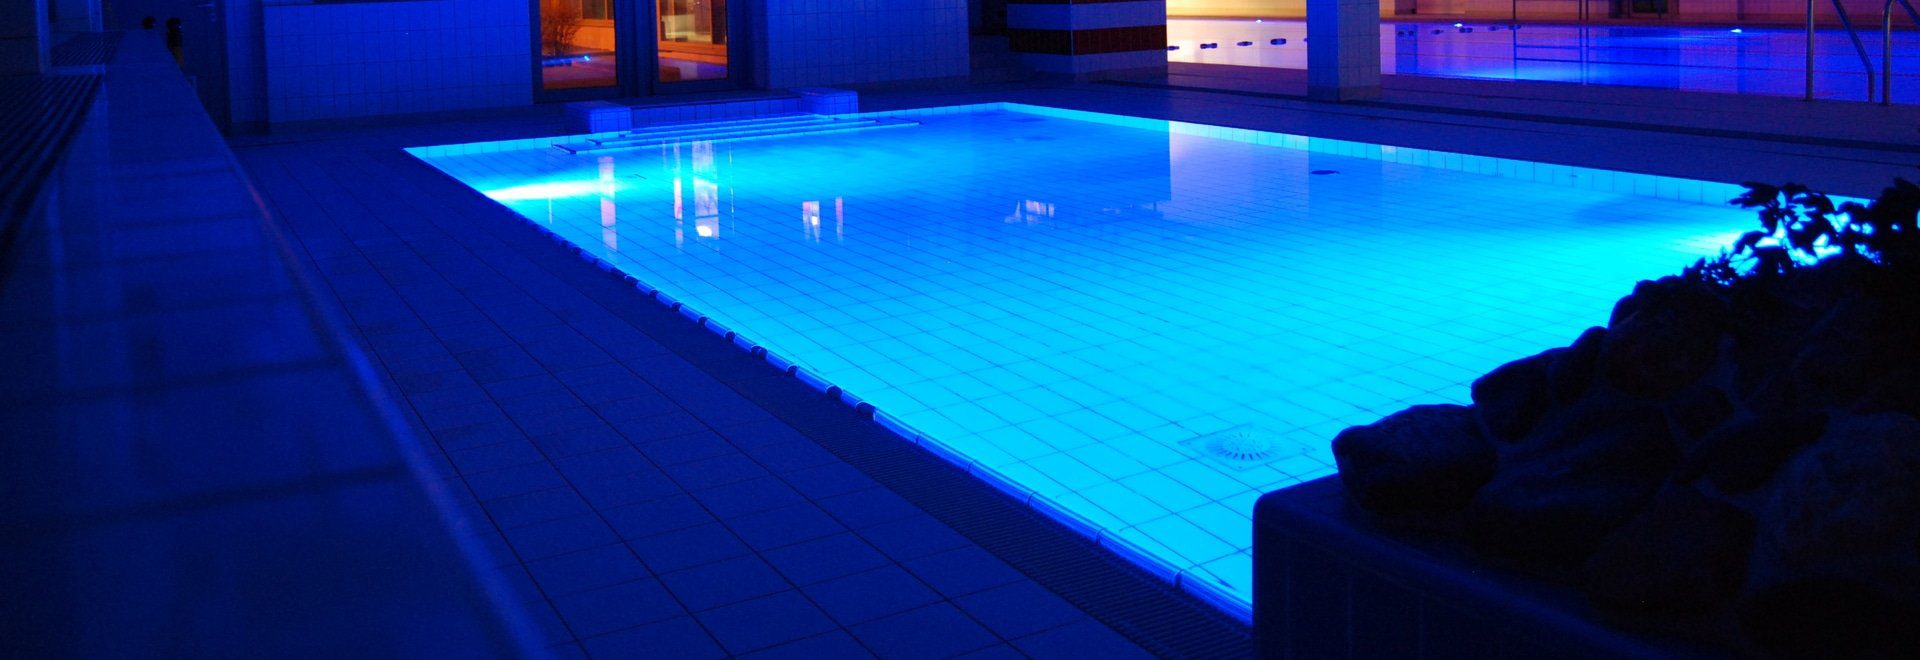 luces led piscinas meteor instalaciones nuevas cua 1